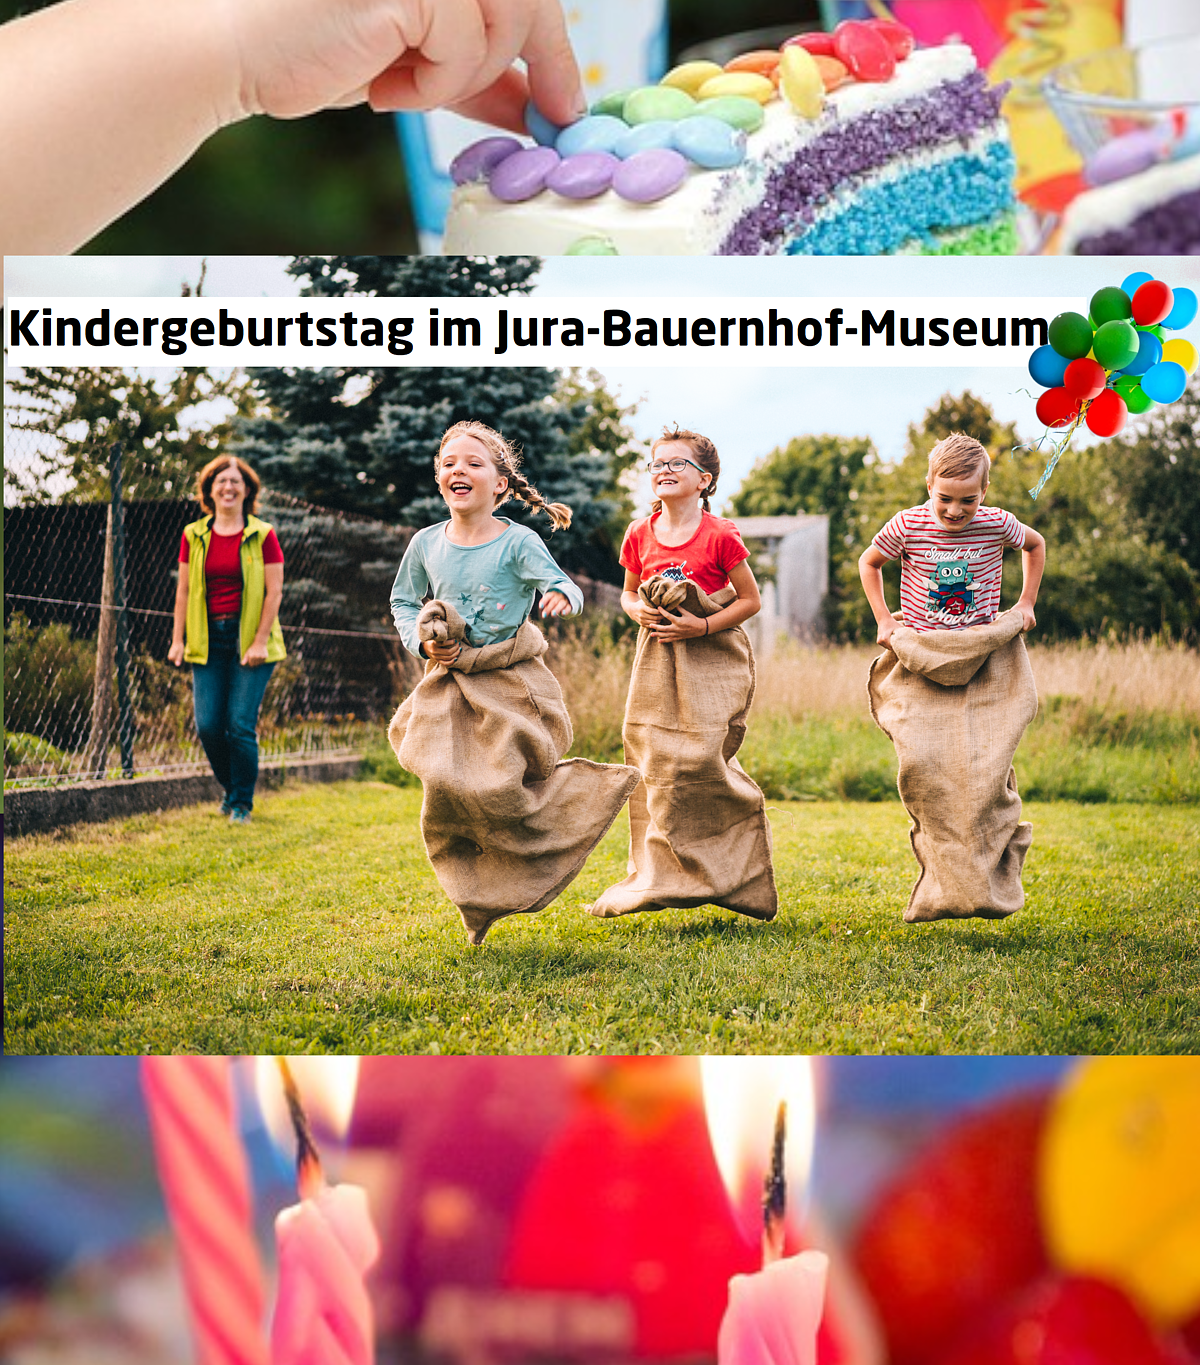 Kindergeburtstag im Jura-Bauernhof-Museum